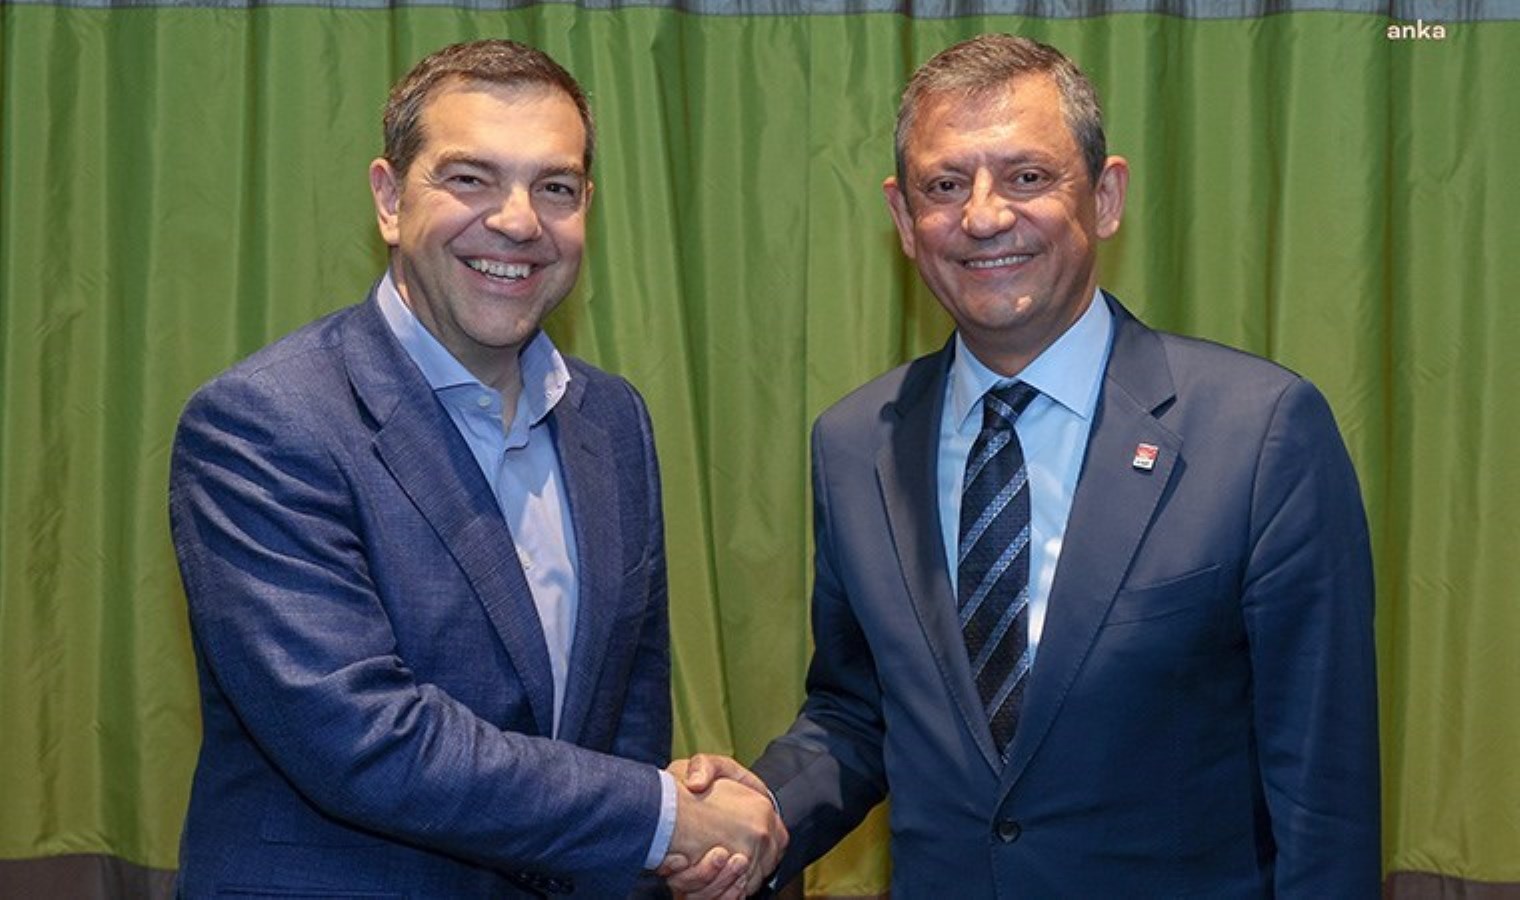 Ο πρώην πρωθυπουργός Τσίπρας κάλεσε τον Özgür Özel στην Αθήνα: «Οι προοδευτικοί πρέπει να είναι μαζί για τις αριστερές αξίες» – Έκτακτα Πολιτικά Νέα